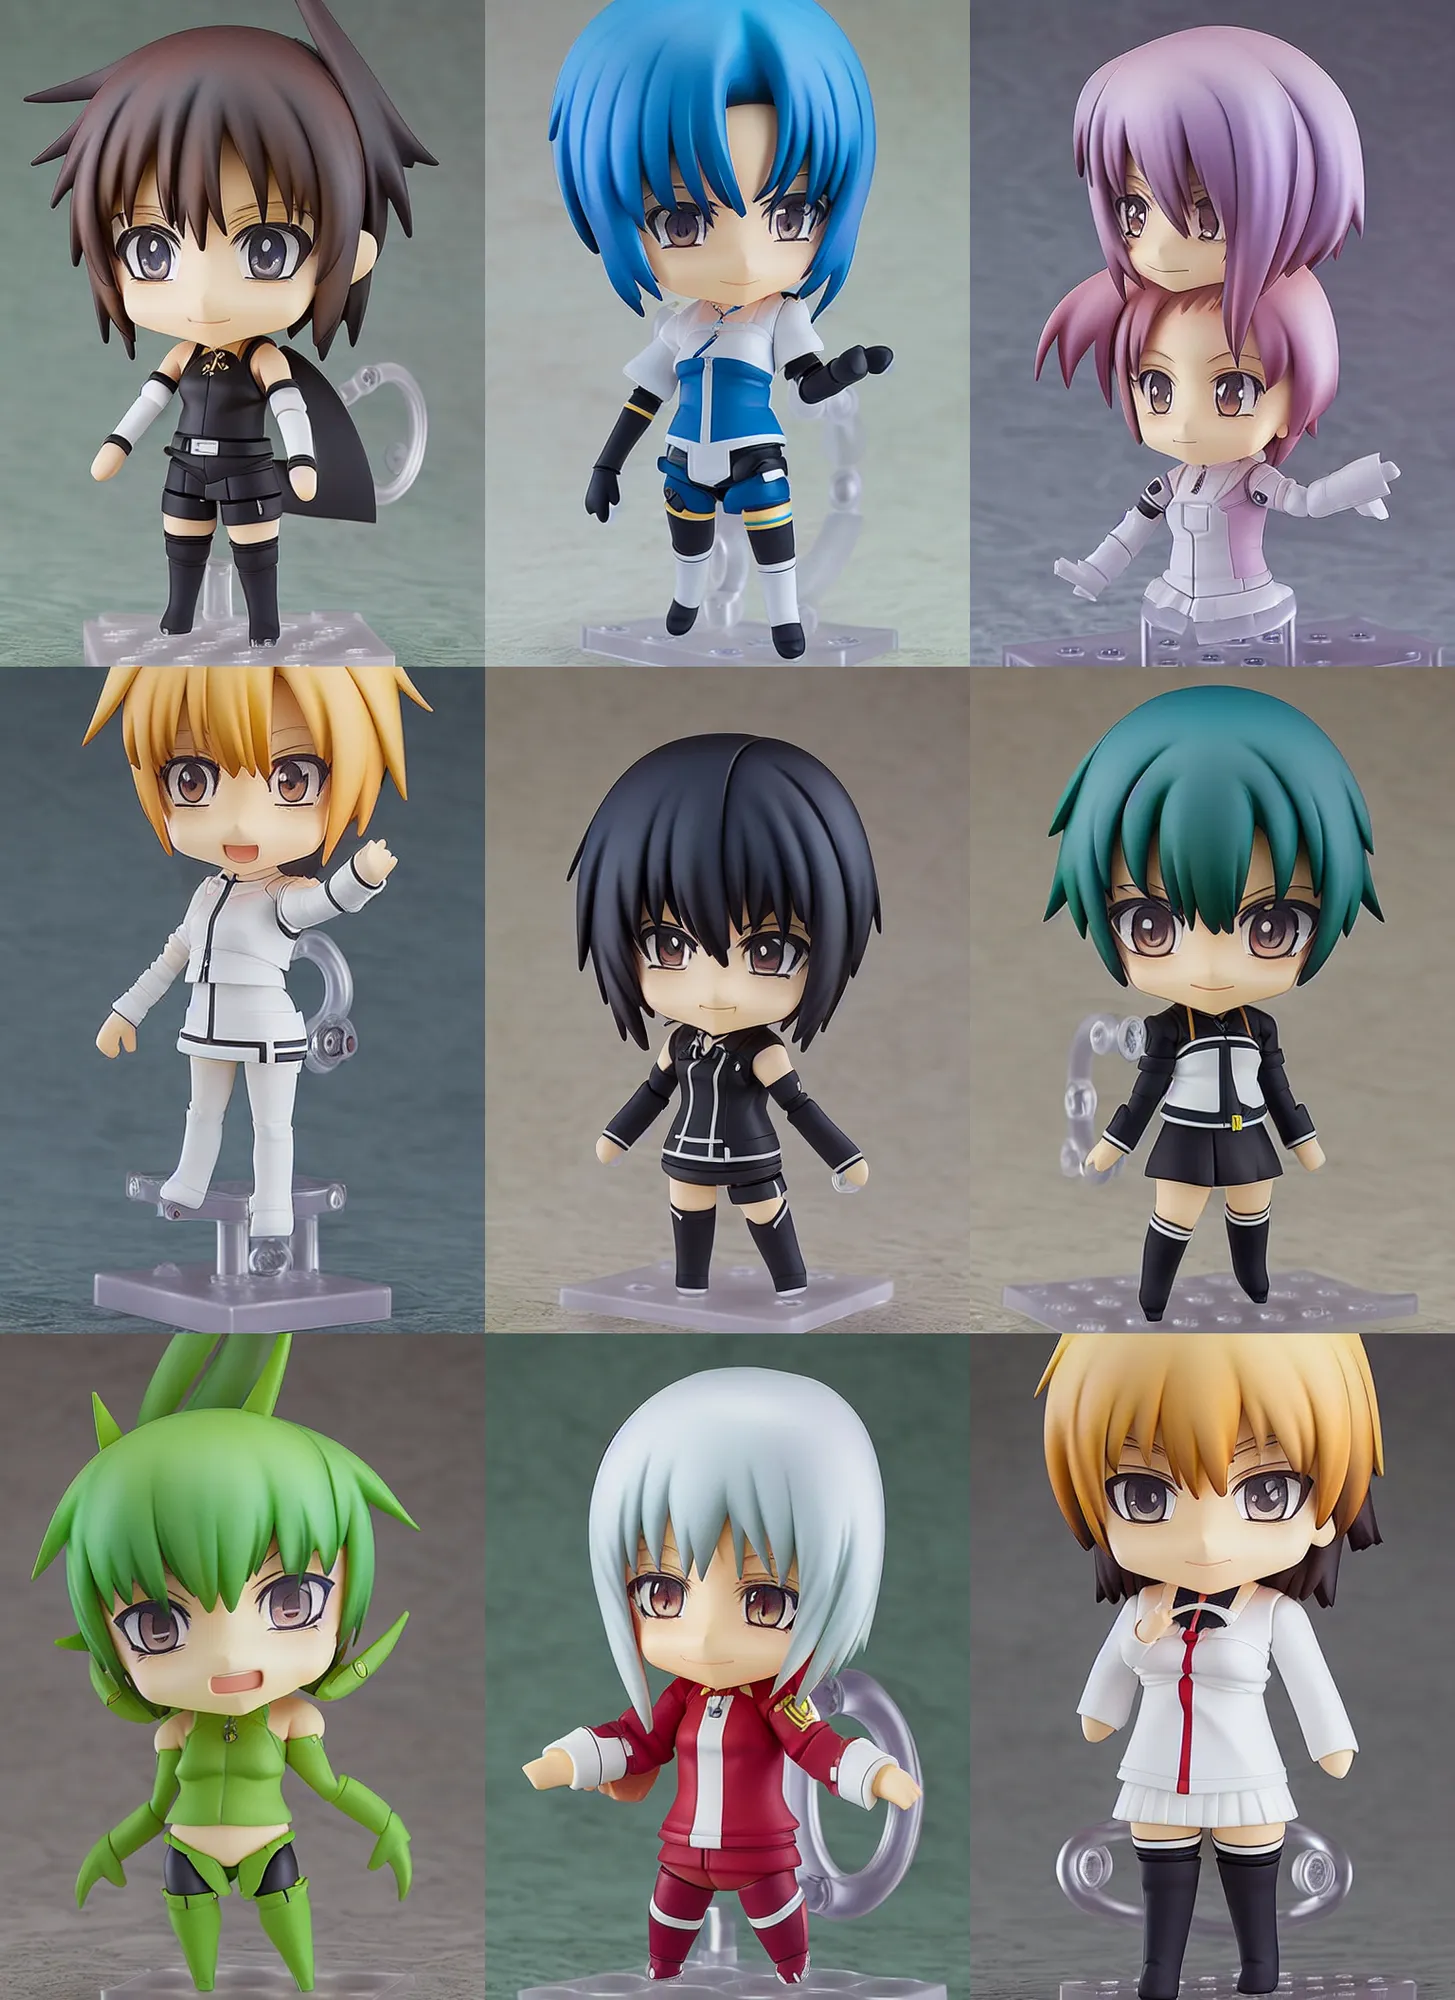 kawaii kart My Hero Academia Chibi Figures (Set of 3) | My Hero Academia  Merchandise for Anime Lovers (Size - 12 cm) - My Hero Academia Chibi Figures  (Set of 3) |